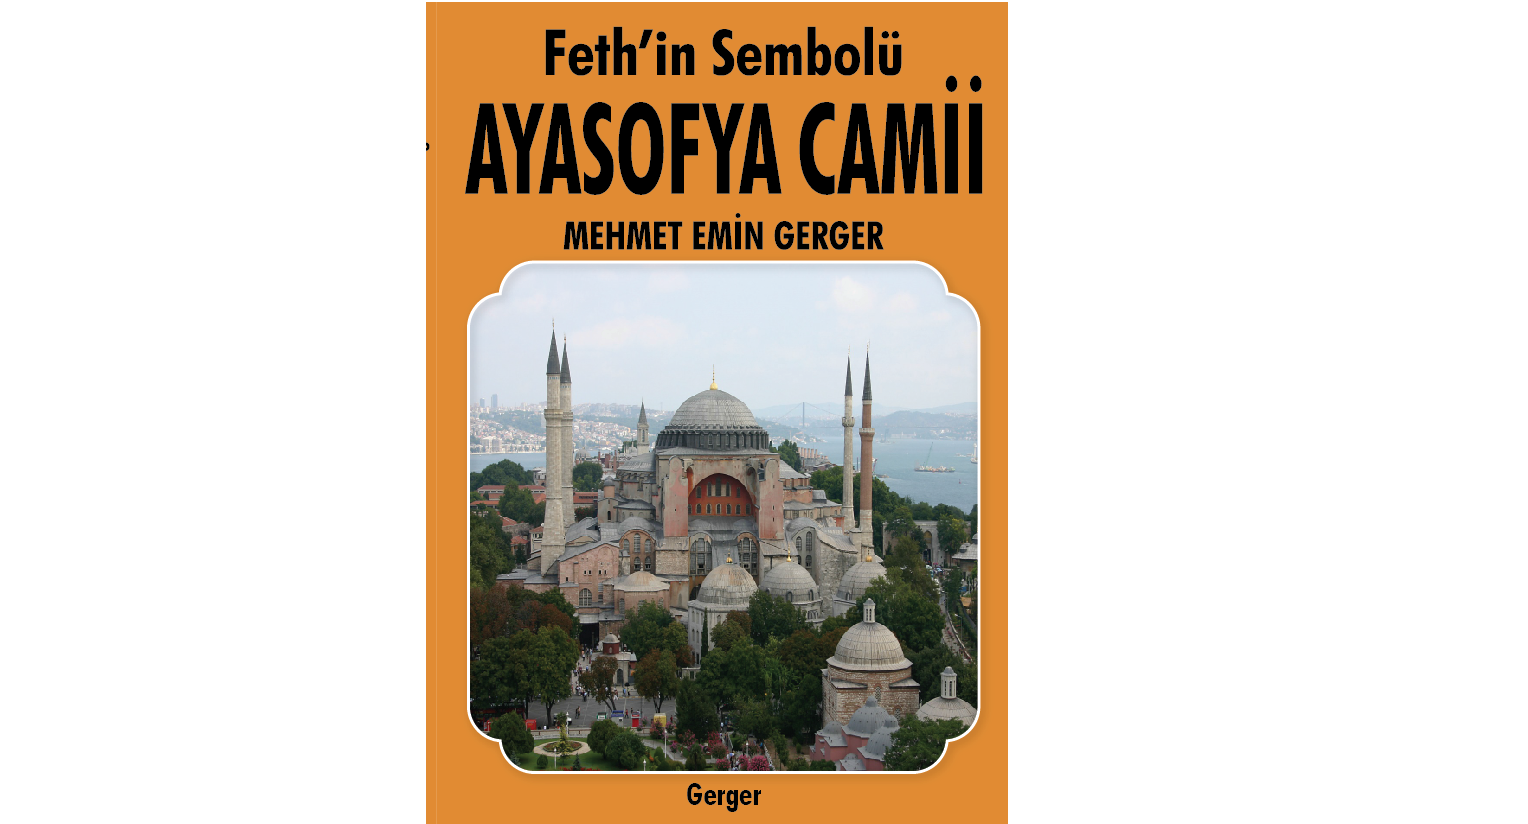 Feth’in Sembolü Ayasofya Camii